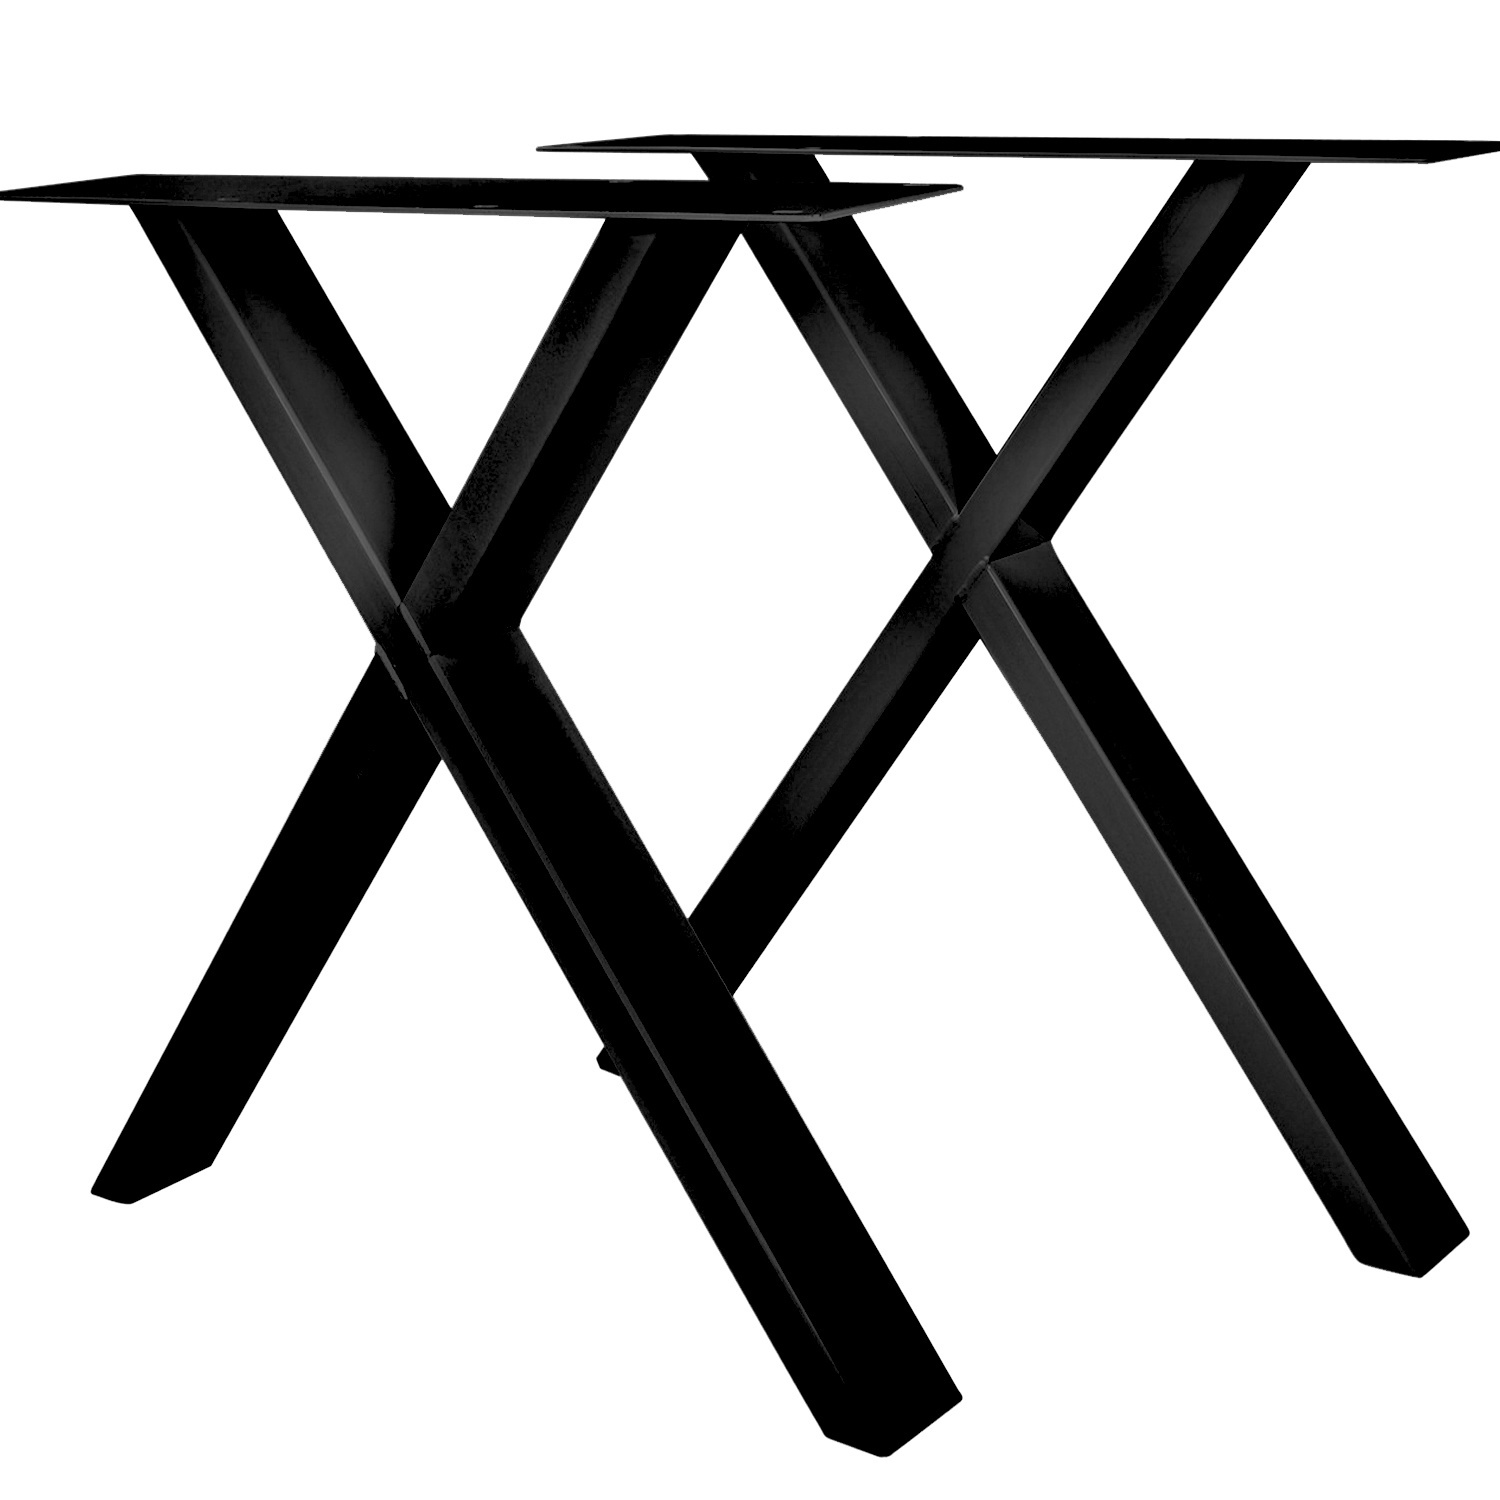 Tischbeine X metall / stahl schlank 2x10 cm - Schwarz beschichtet